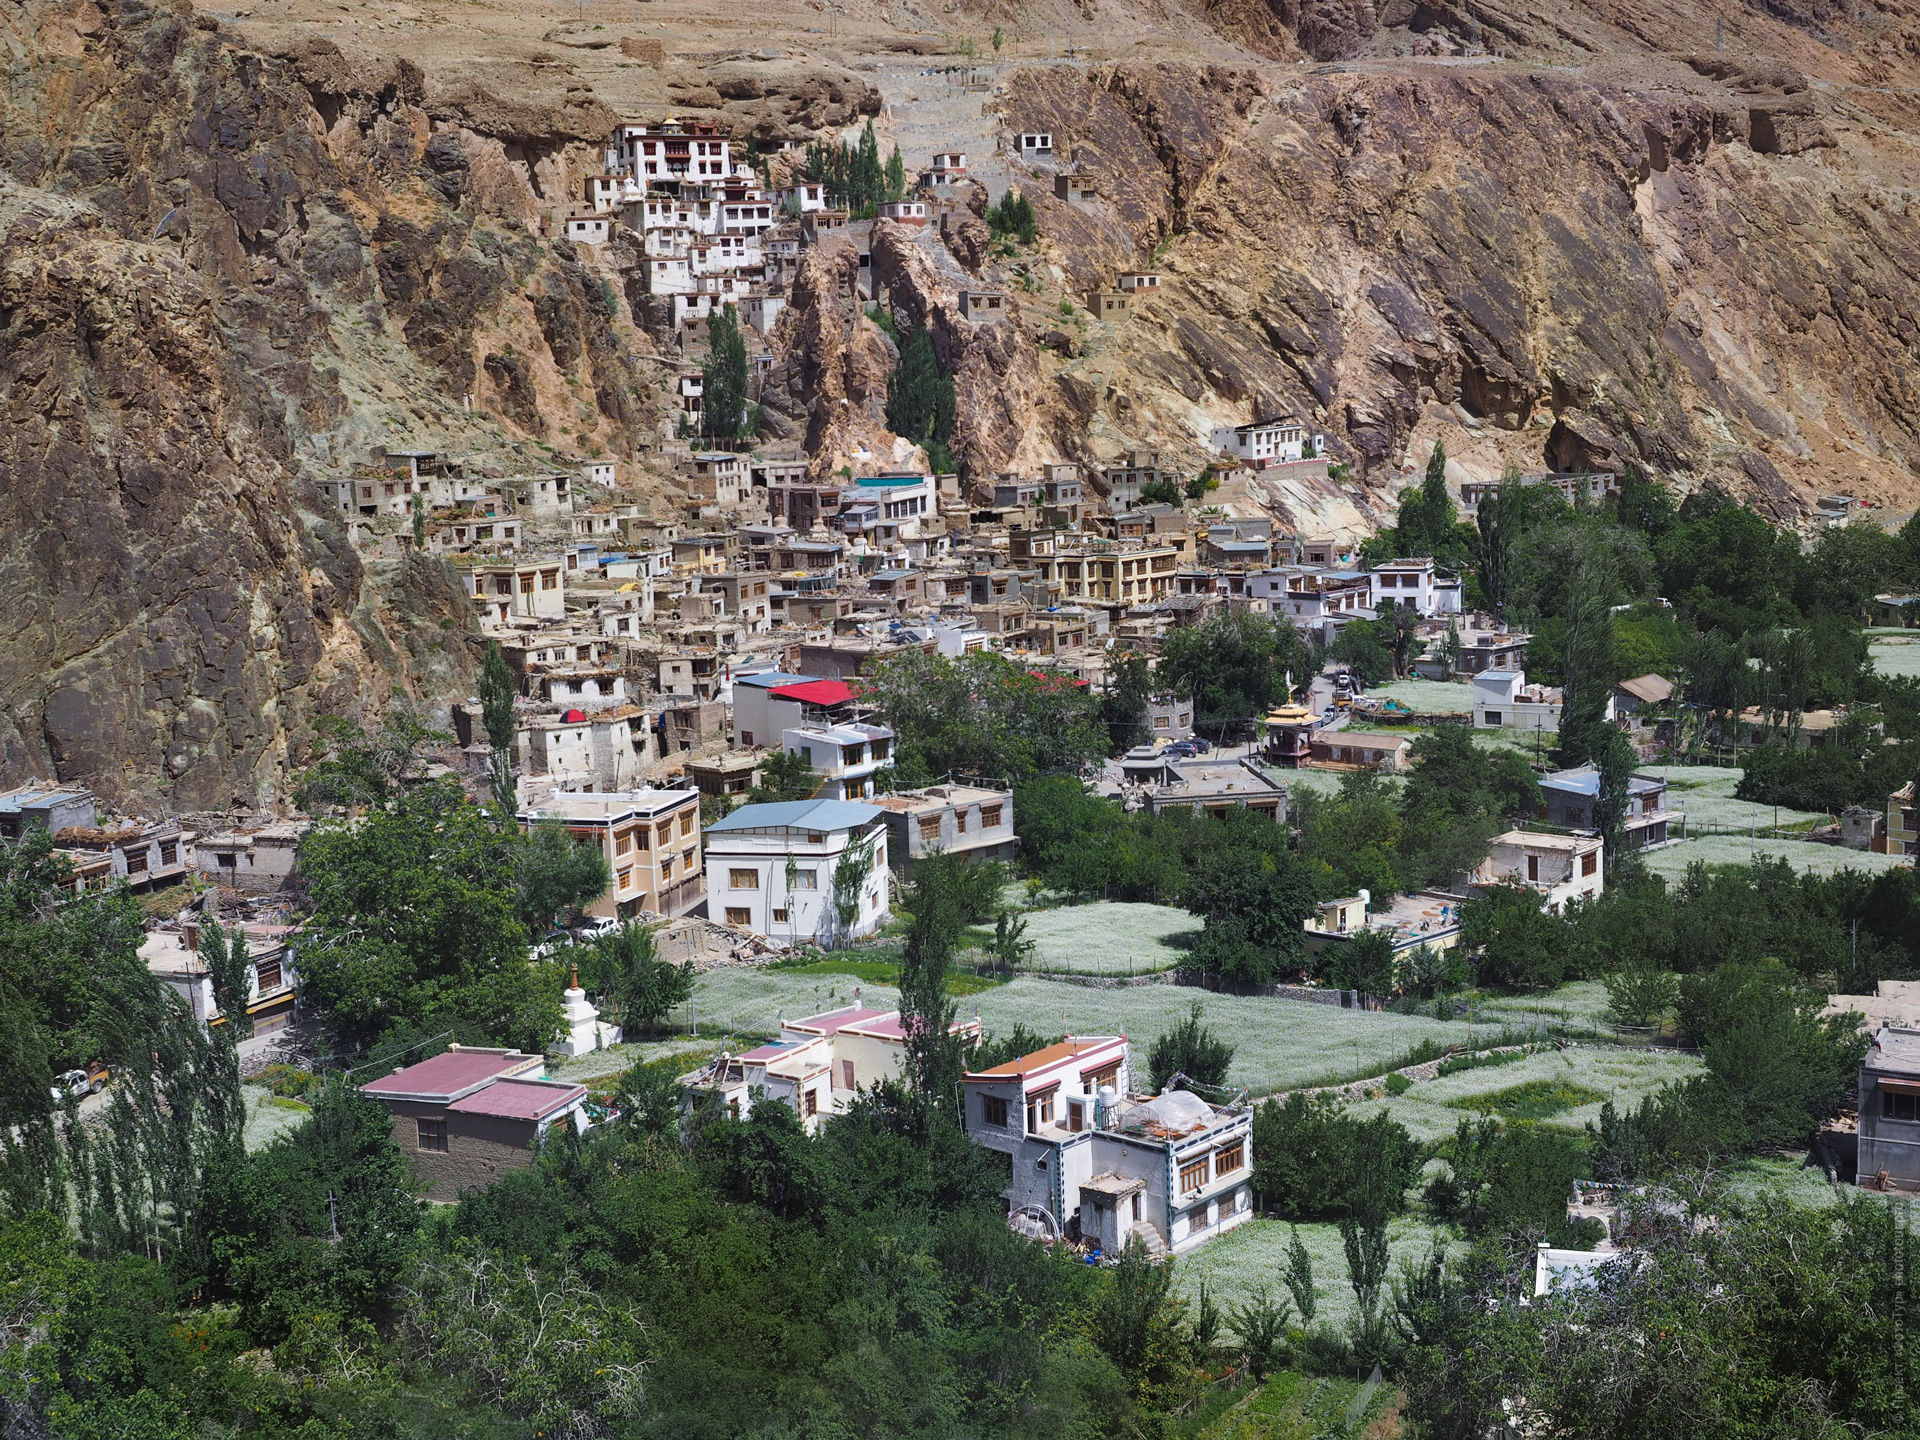 Скальный монастырь Скурбучан Гонпа. Йога-тур по Ладакху, Гималаи с Мариной Плехановой, 12 - 23 августа 2023 года.